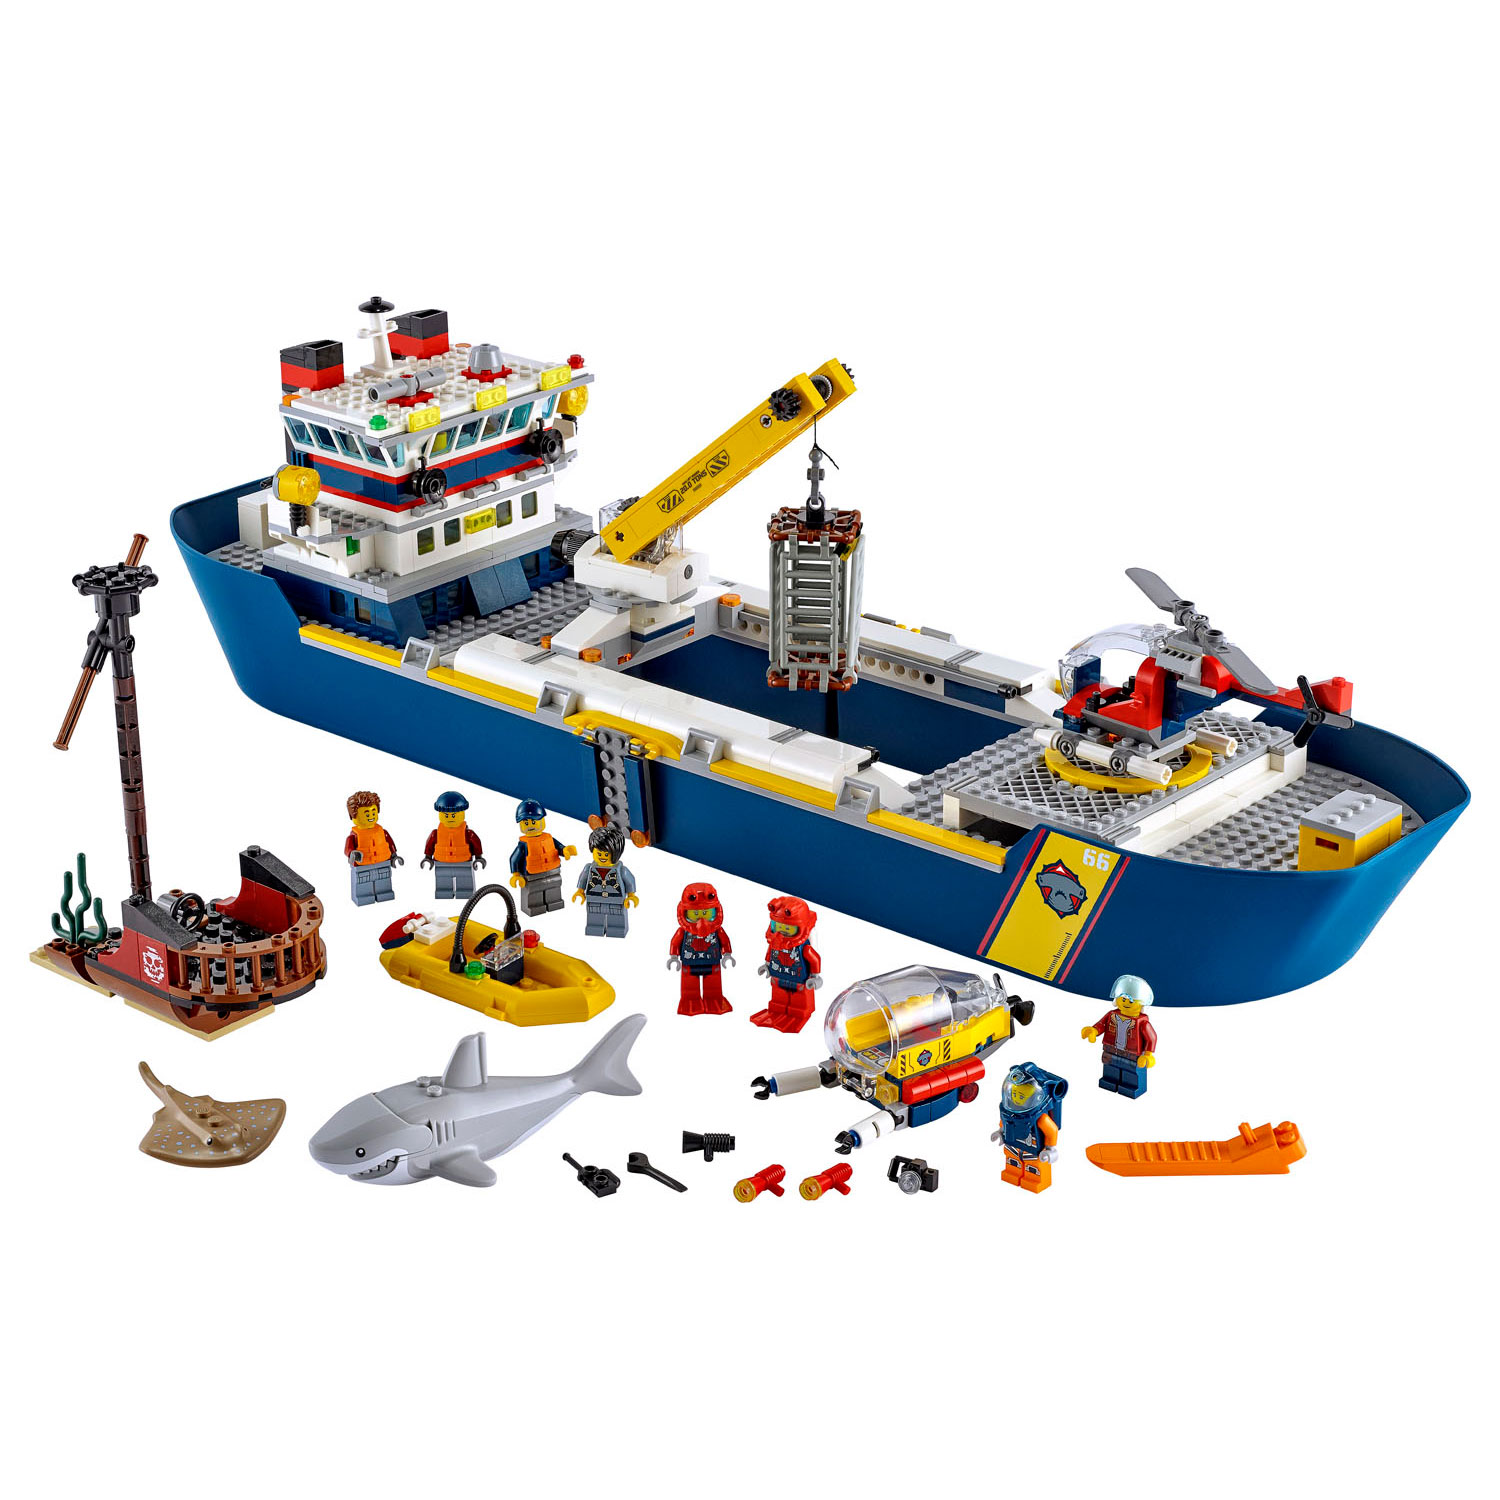 LEGO City 60266 Oceaan Onderzoekschip